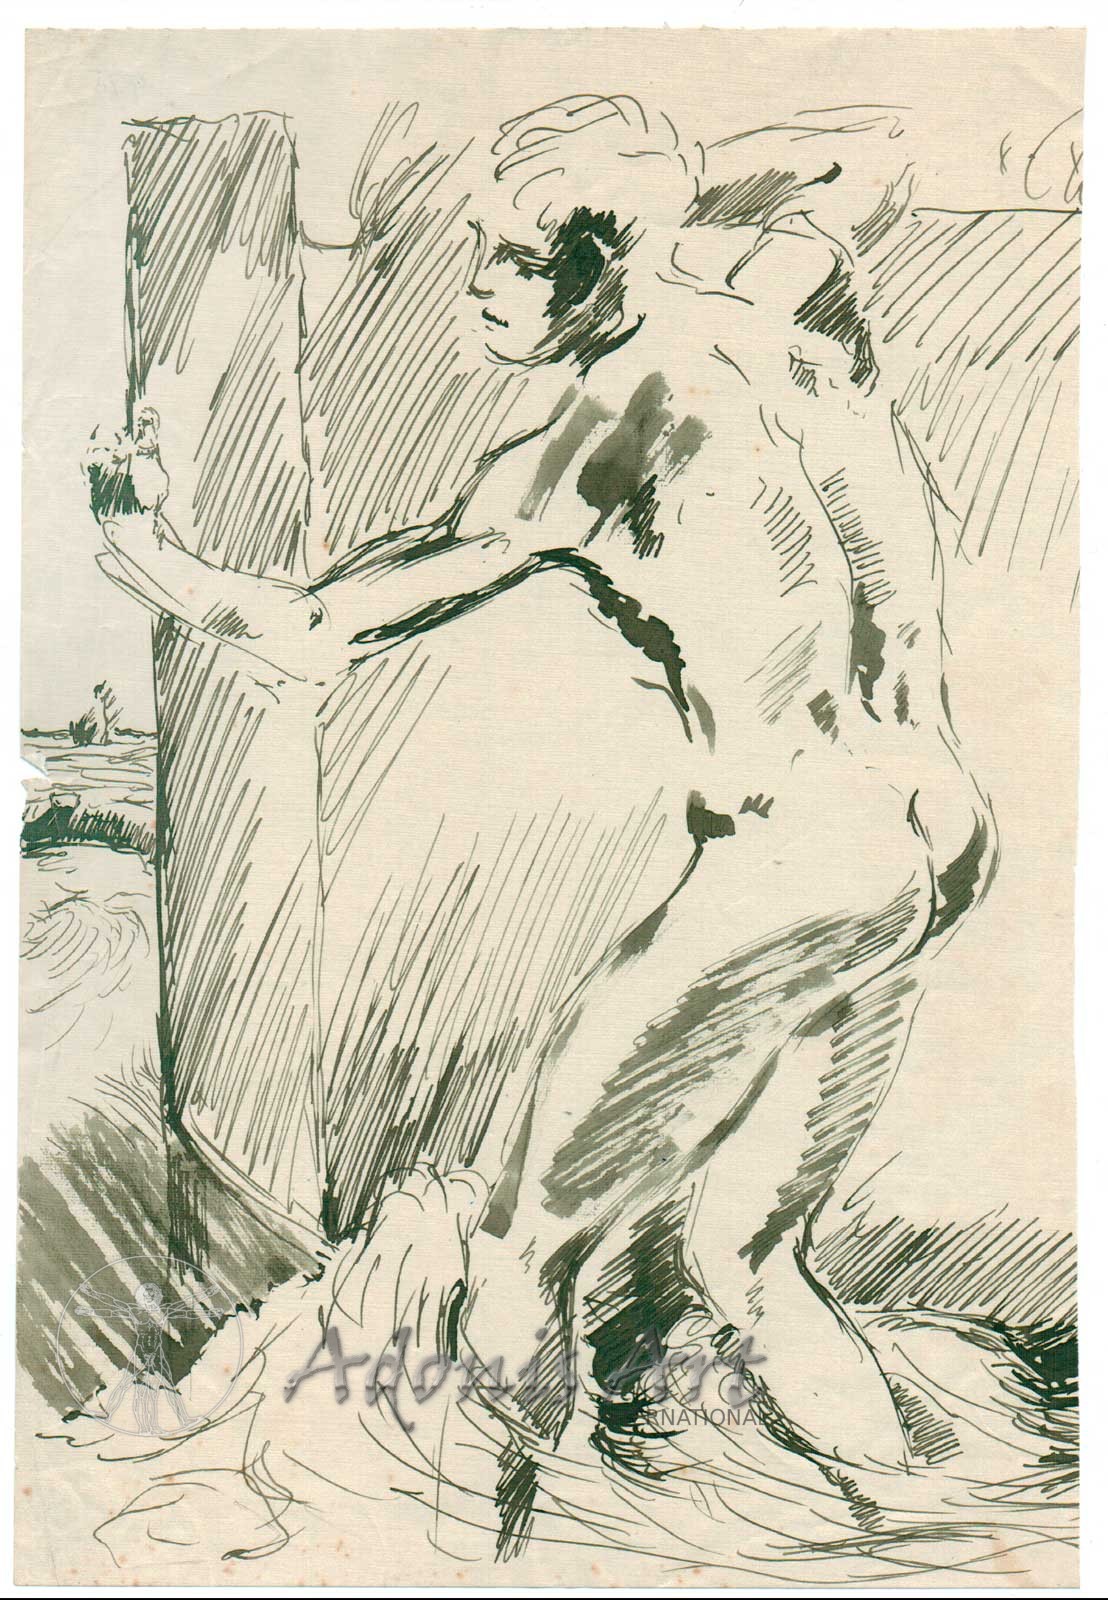 'Wading Figure' by Wilhelm Heinrich Focke